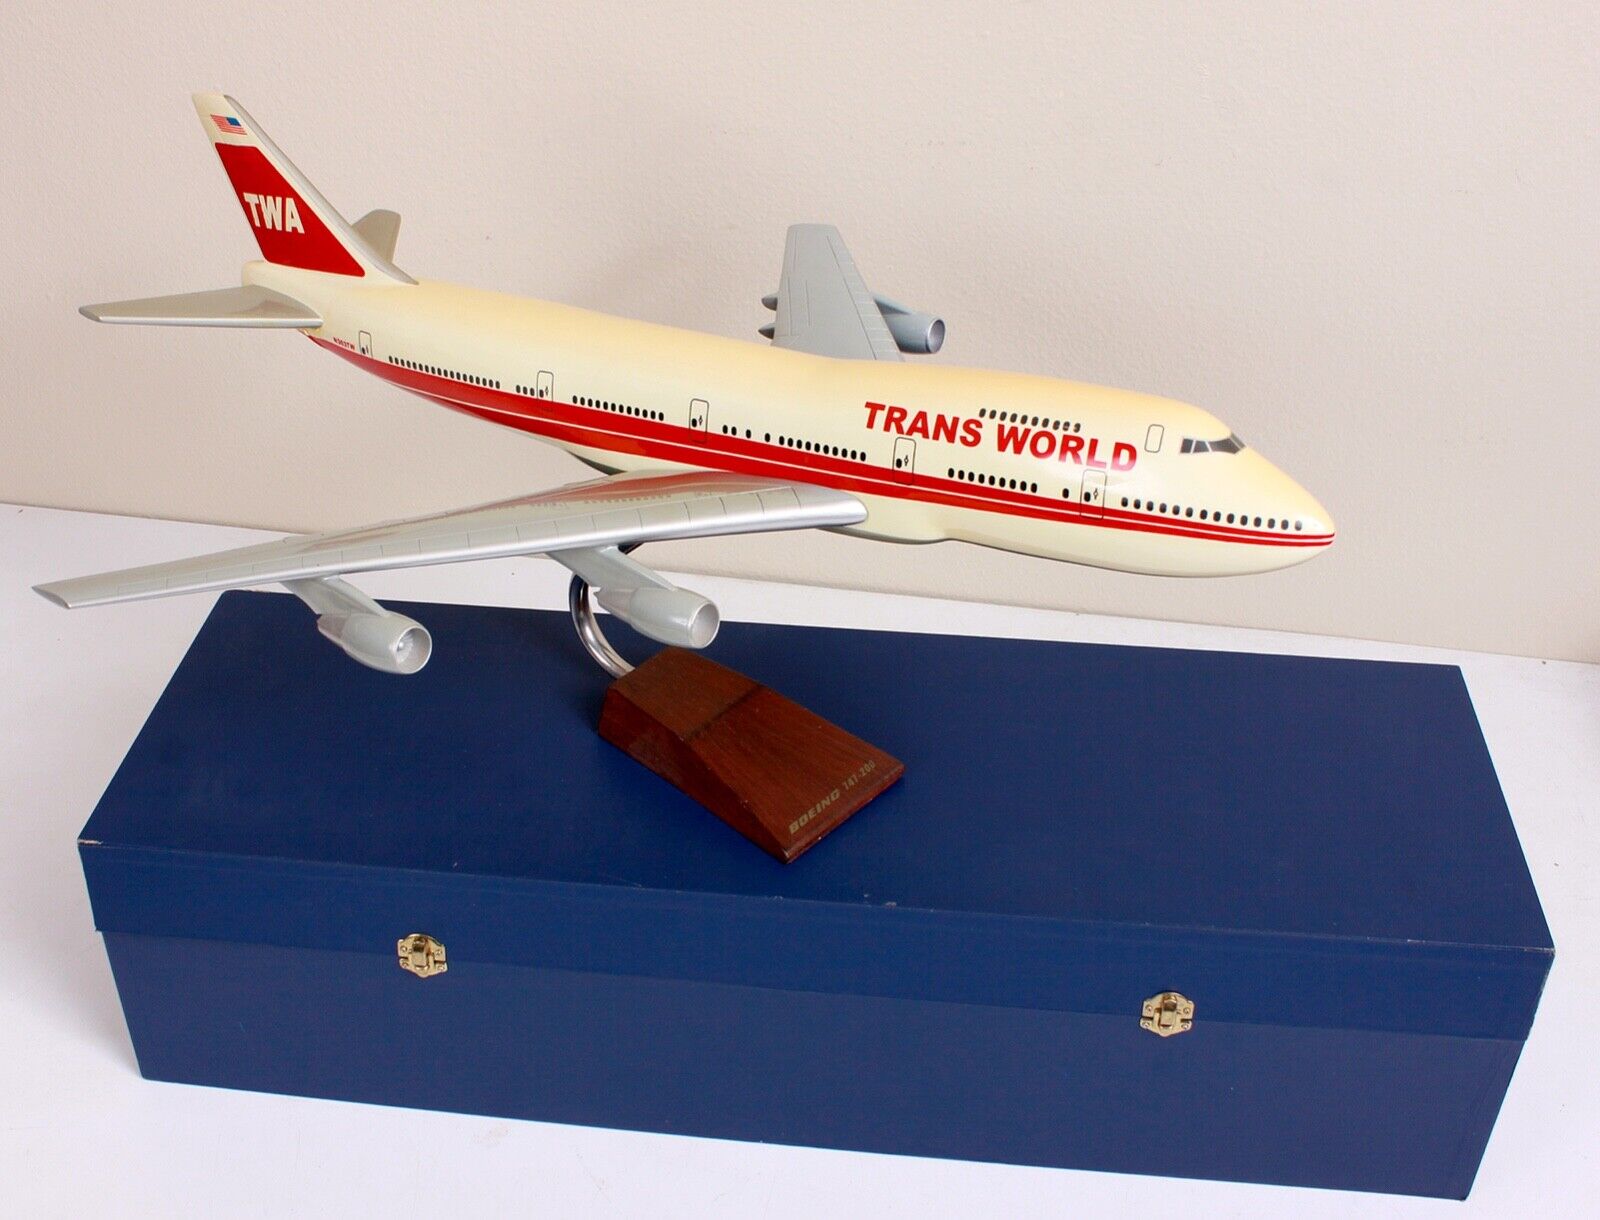 ULTRA RARE TWA 747-200 Executive Presentation Desk Model 1:100 w Storage Case